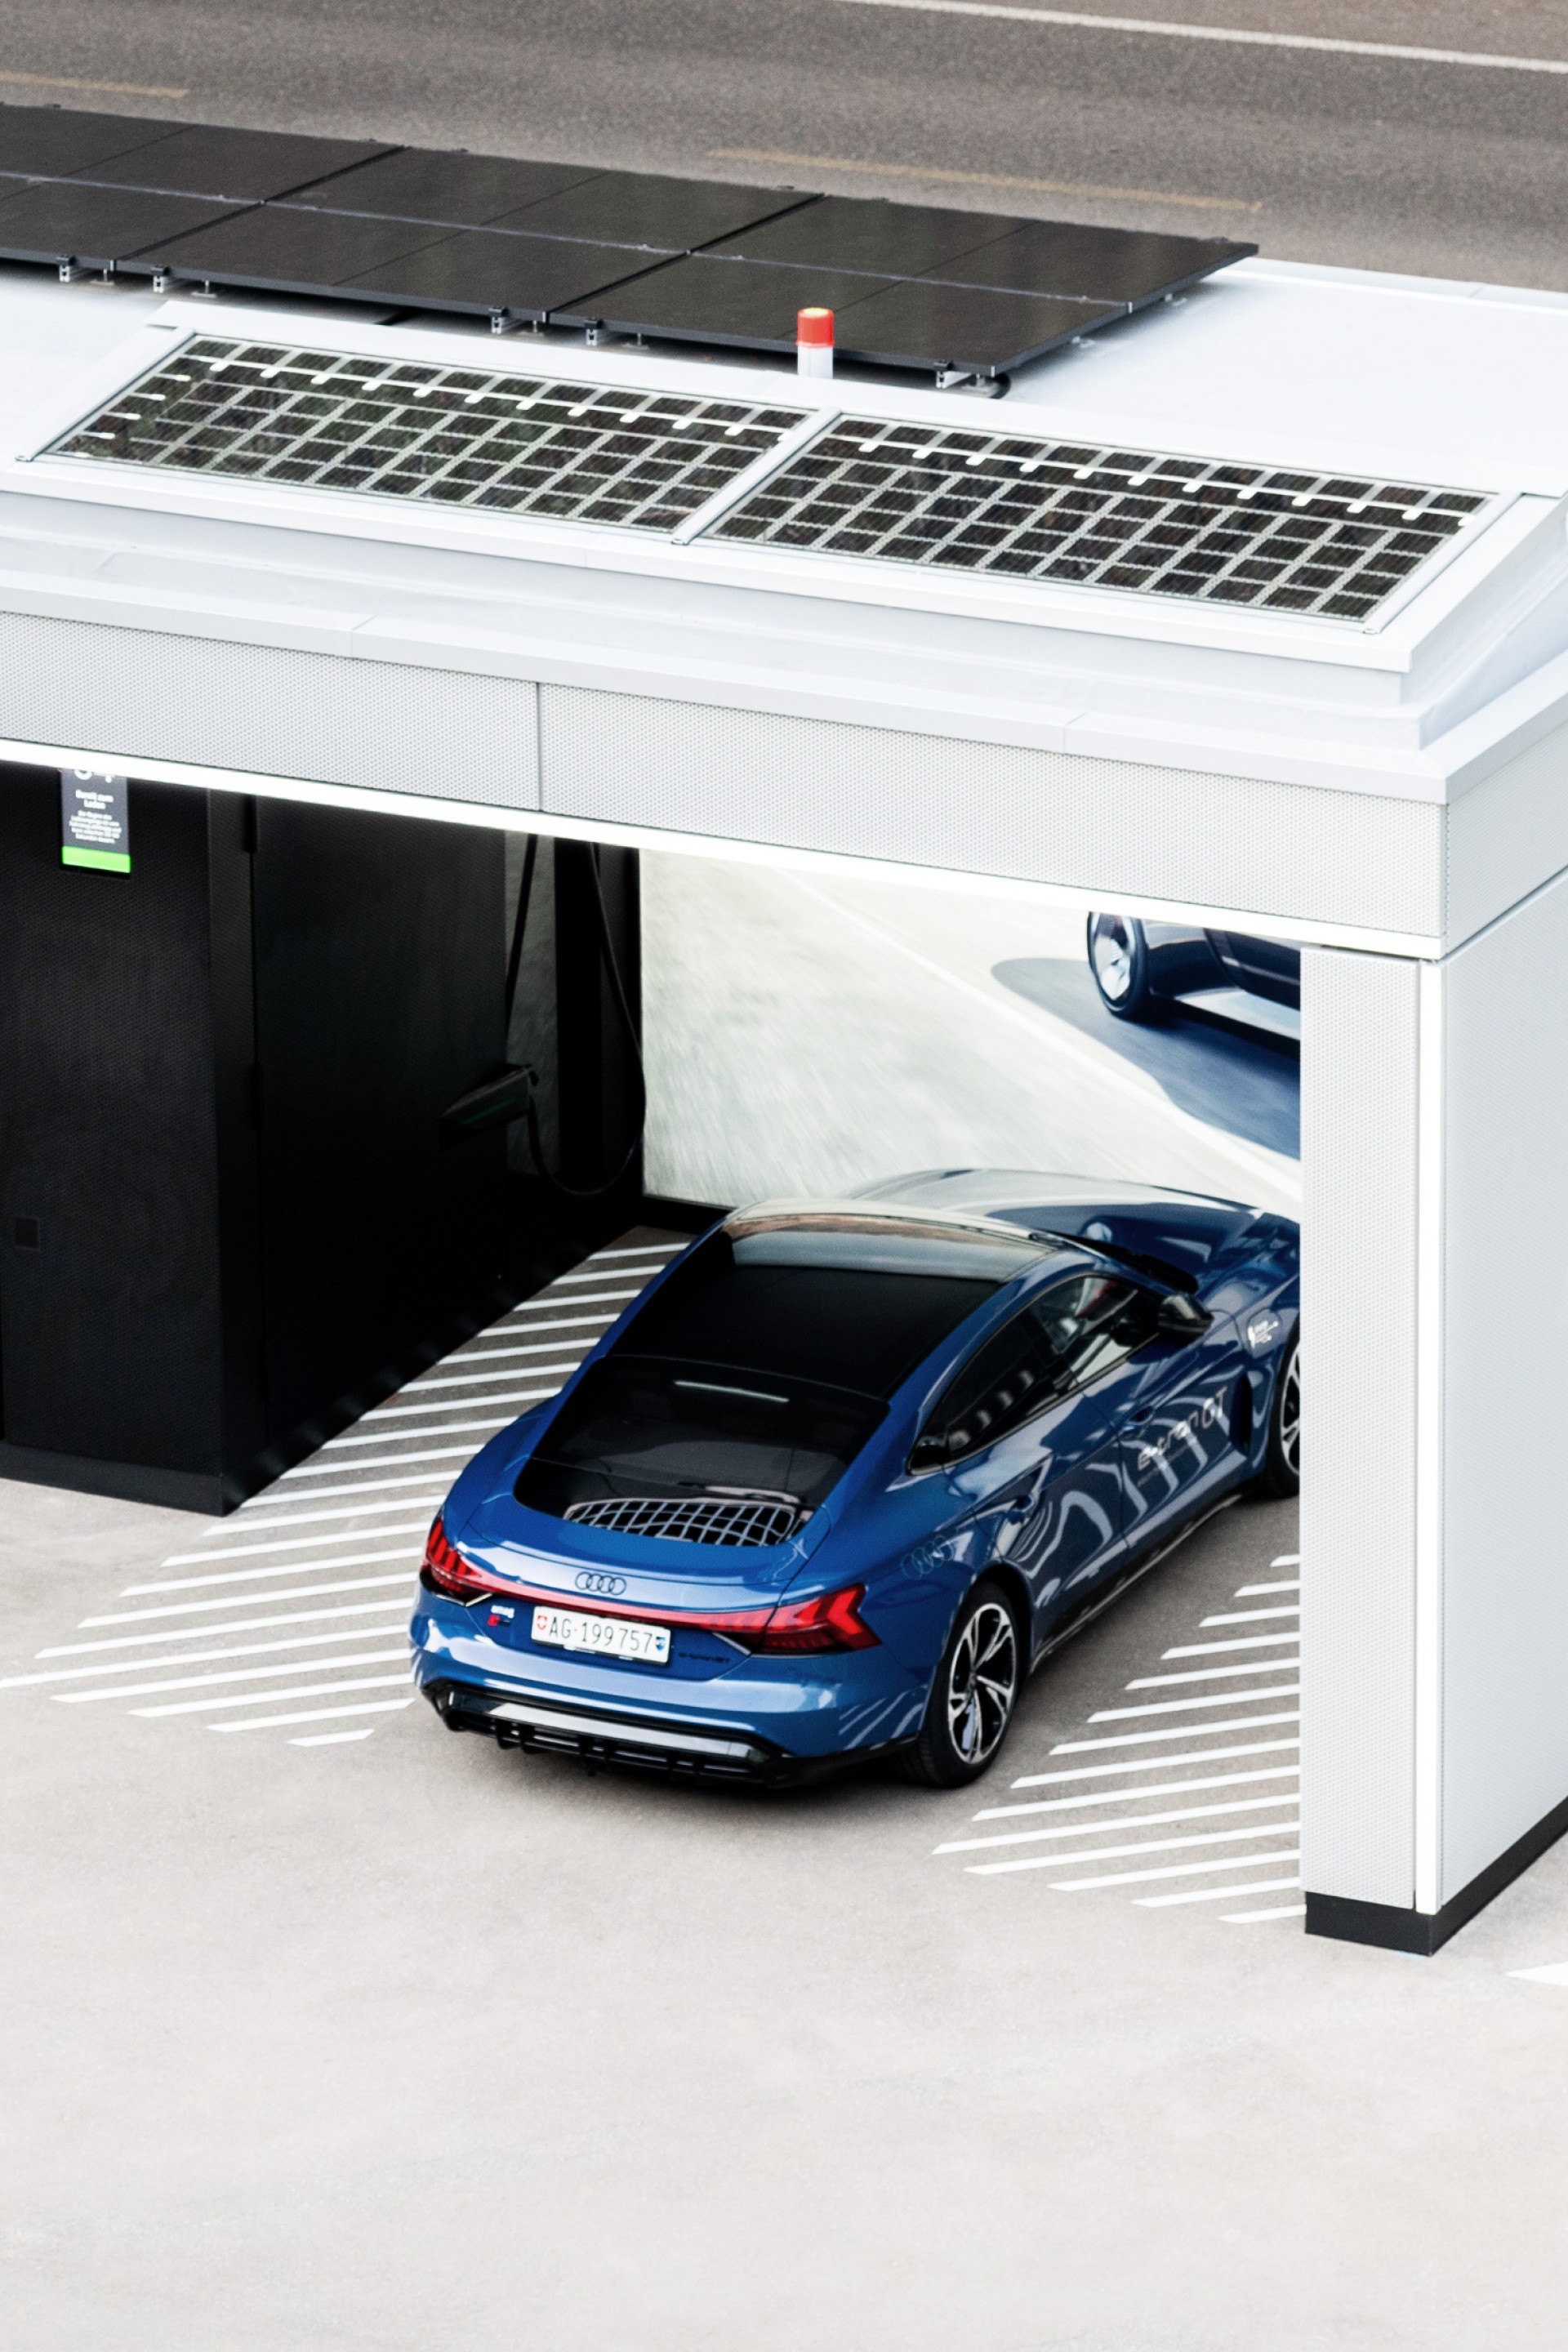 nstalacja fotowoltaiczna na dachu Audi charging hub dostarcza dodatkową energię.